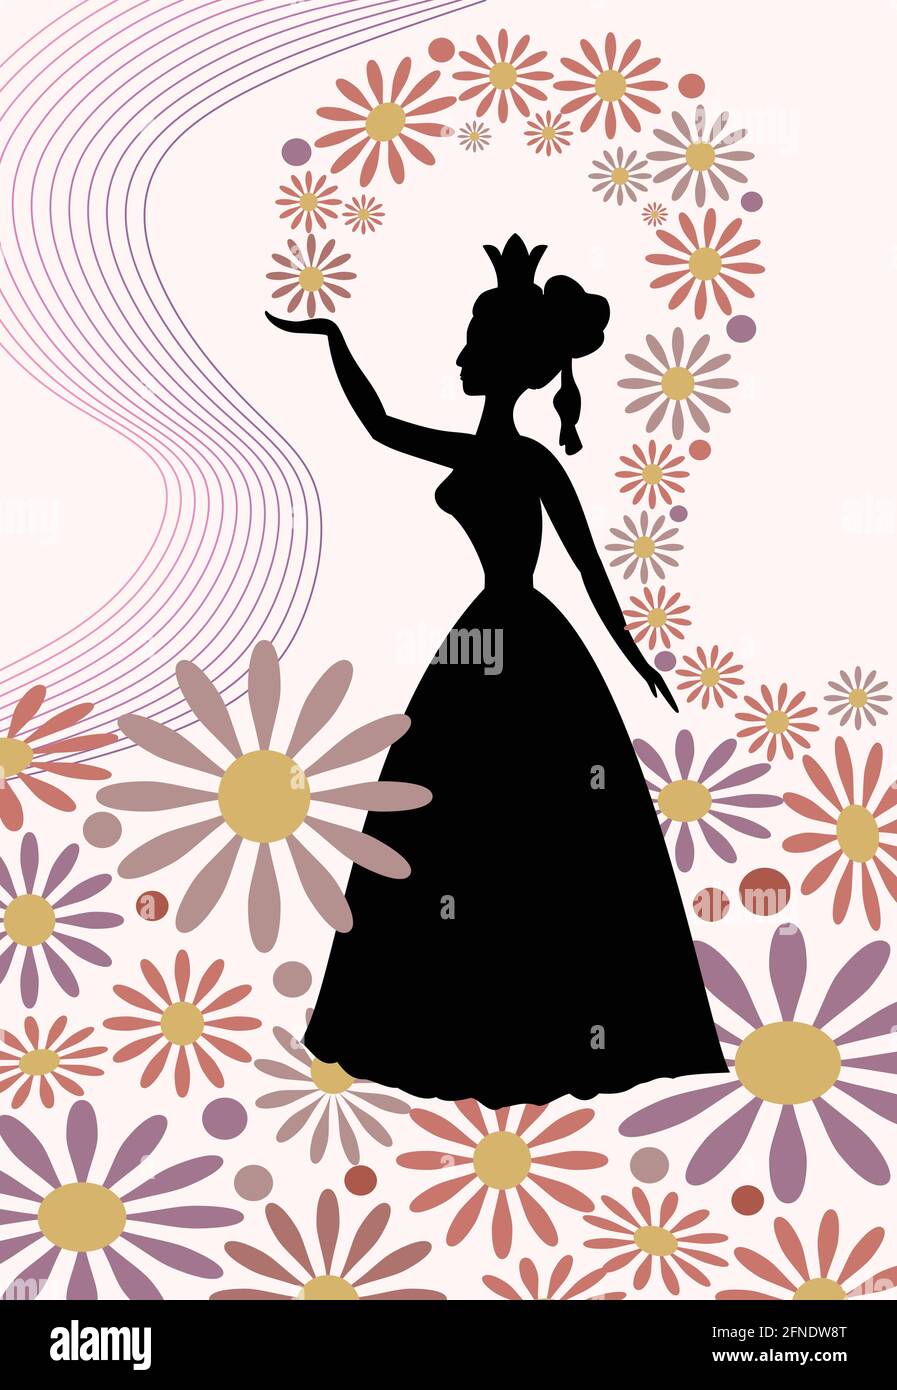 Silhouette einer Dame mit königlicher Krone, die Blumen über ihren Kopf wirft. Romantisches Frühlingsmotiv mit Frühlingskönigin in zartem Pink und Lila. Wunderschön Stock Vektor